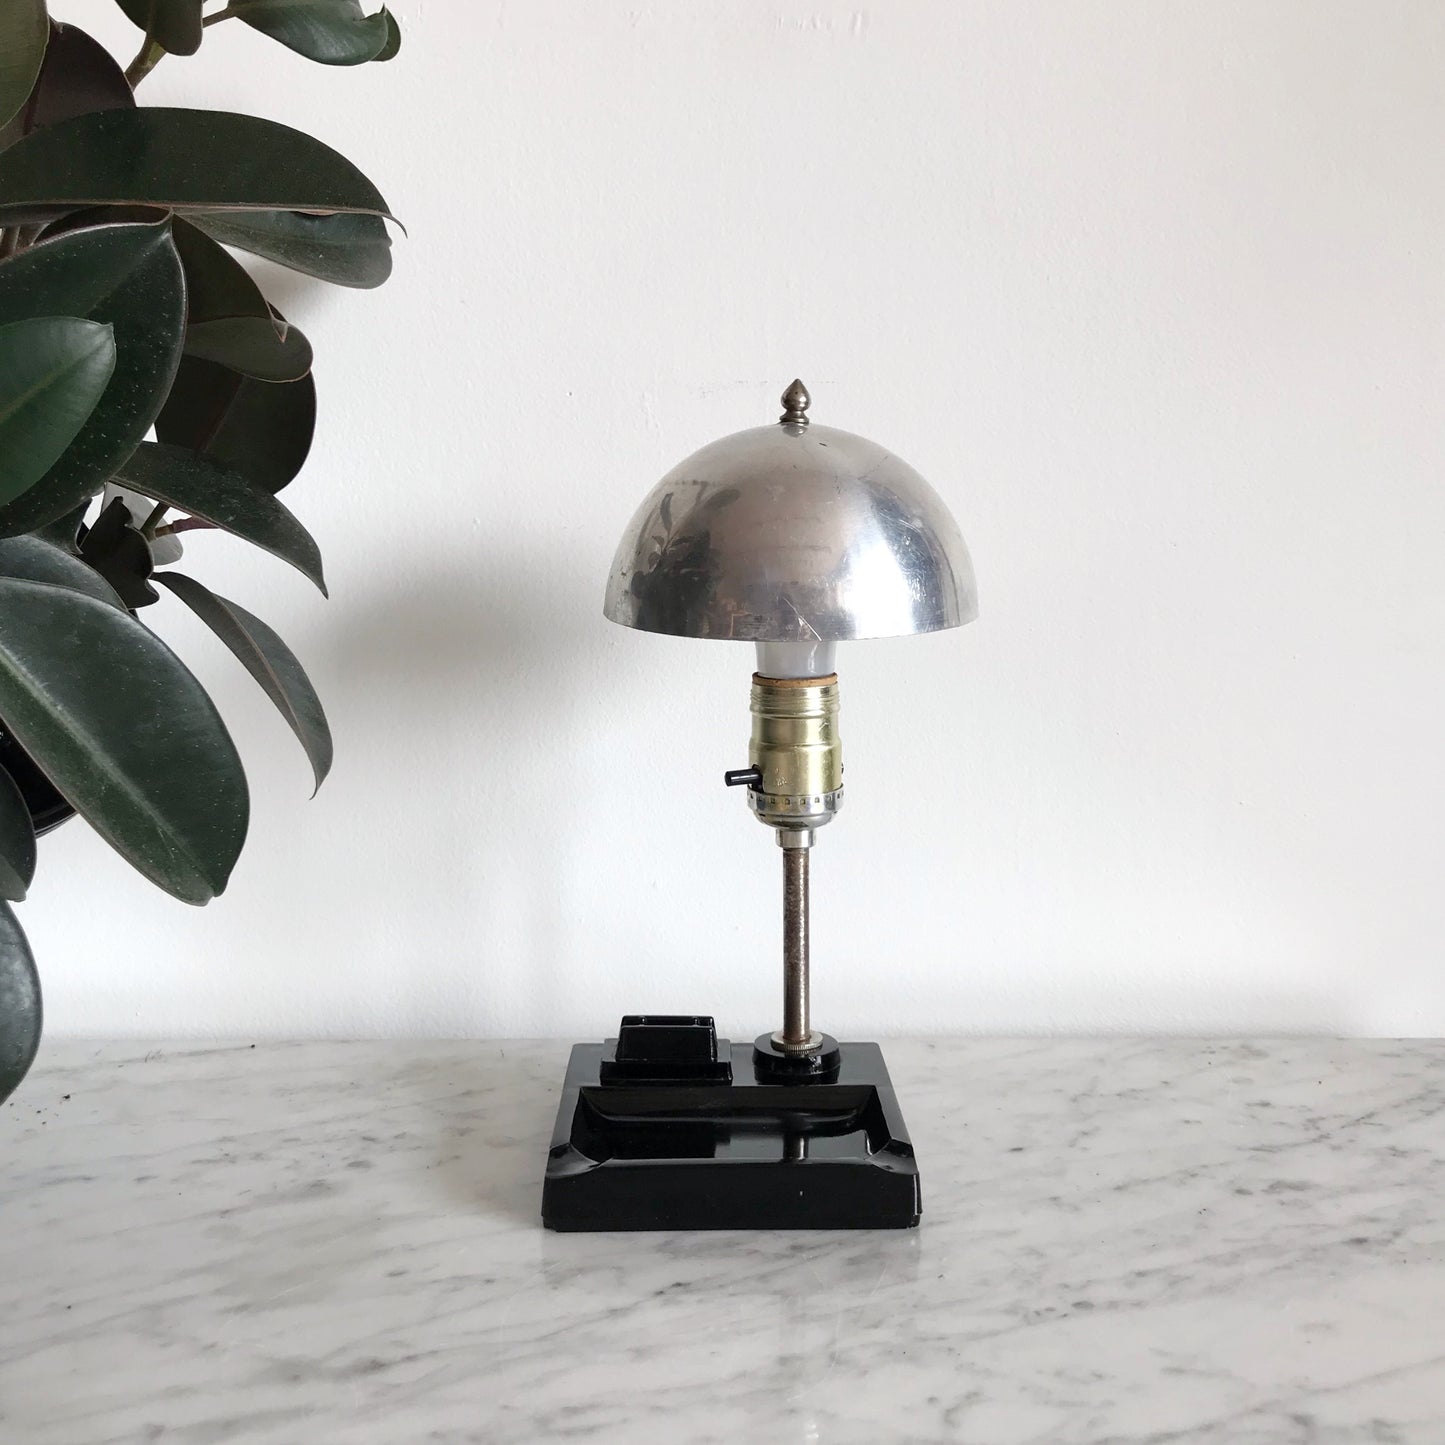 Vintage Art Deco Desk Lamp